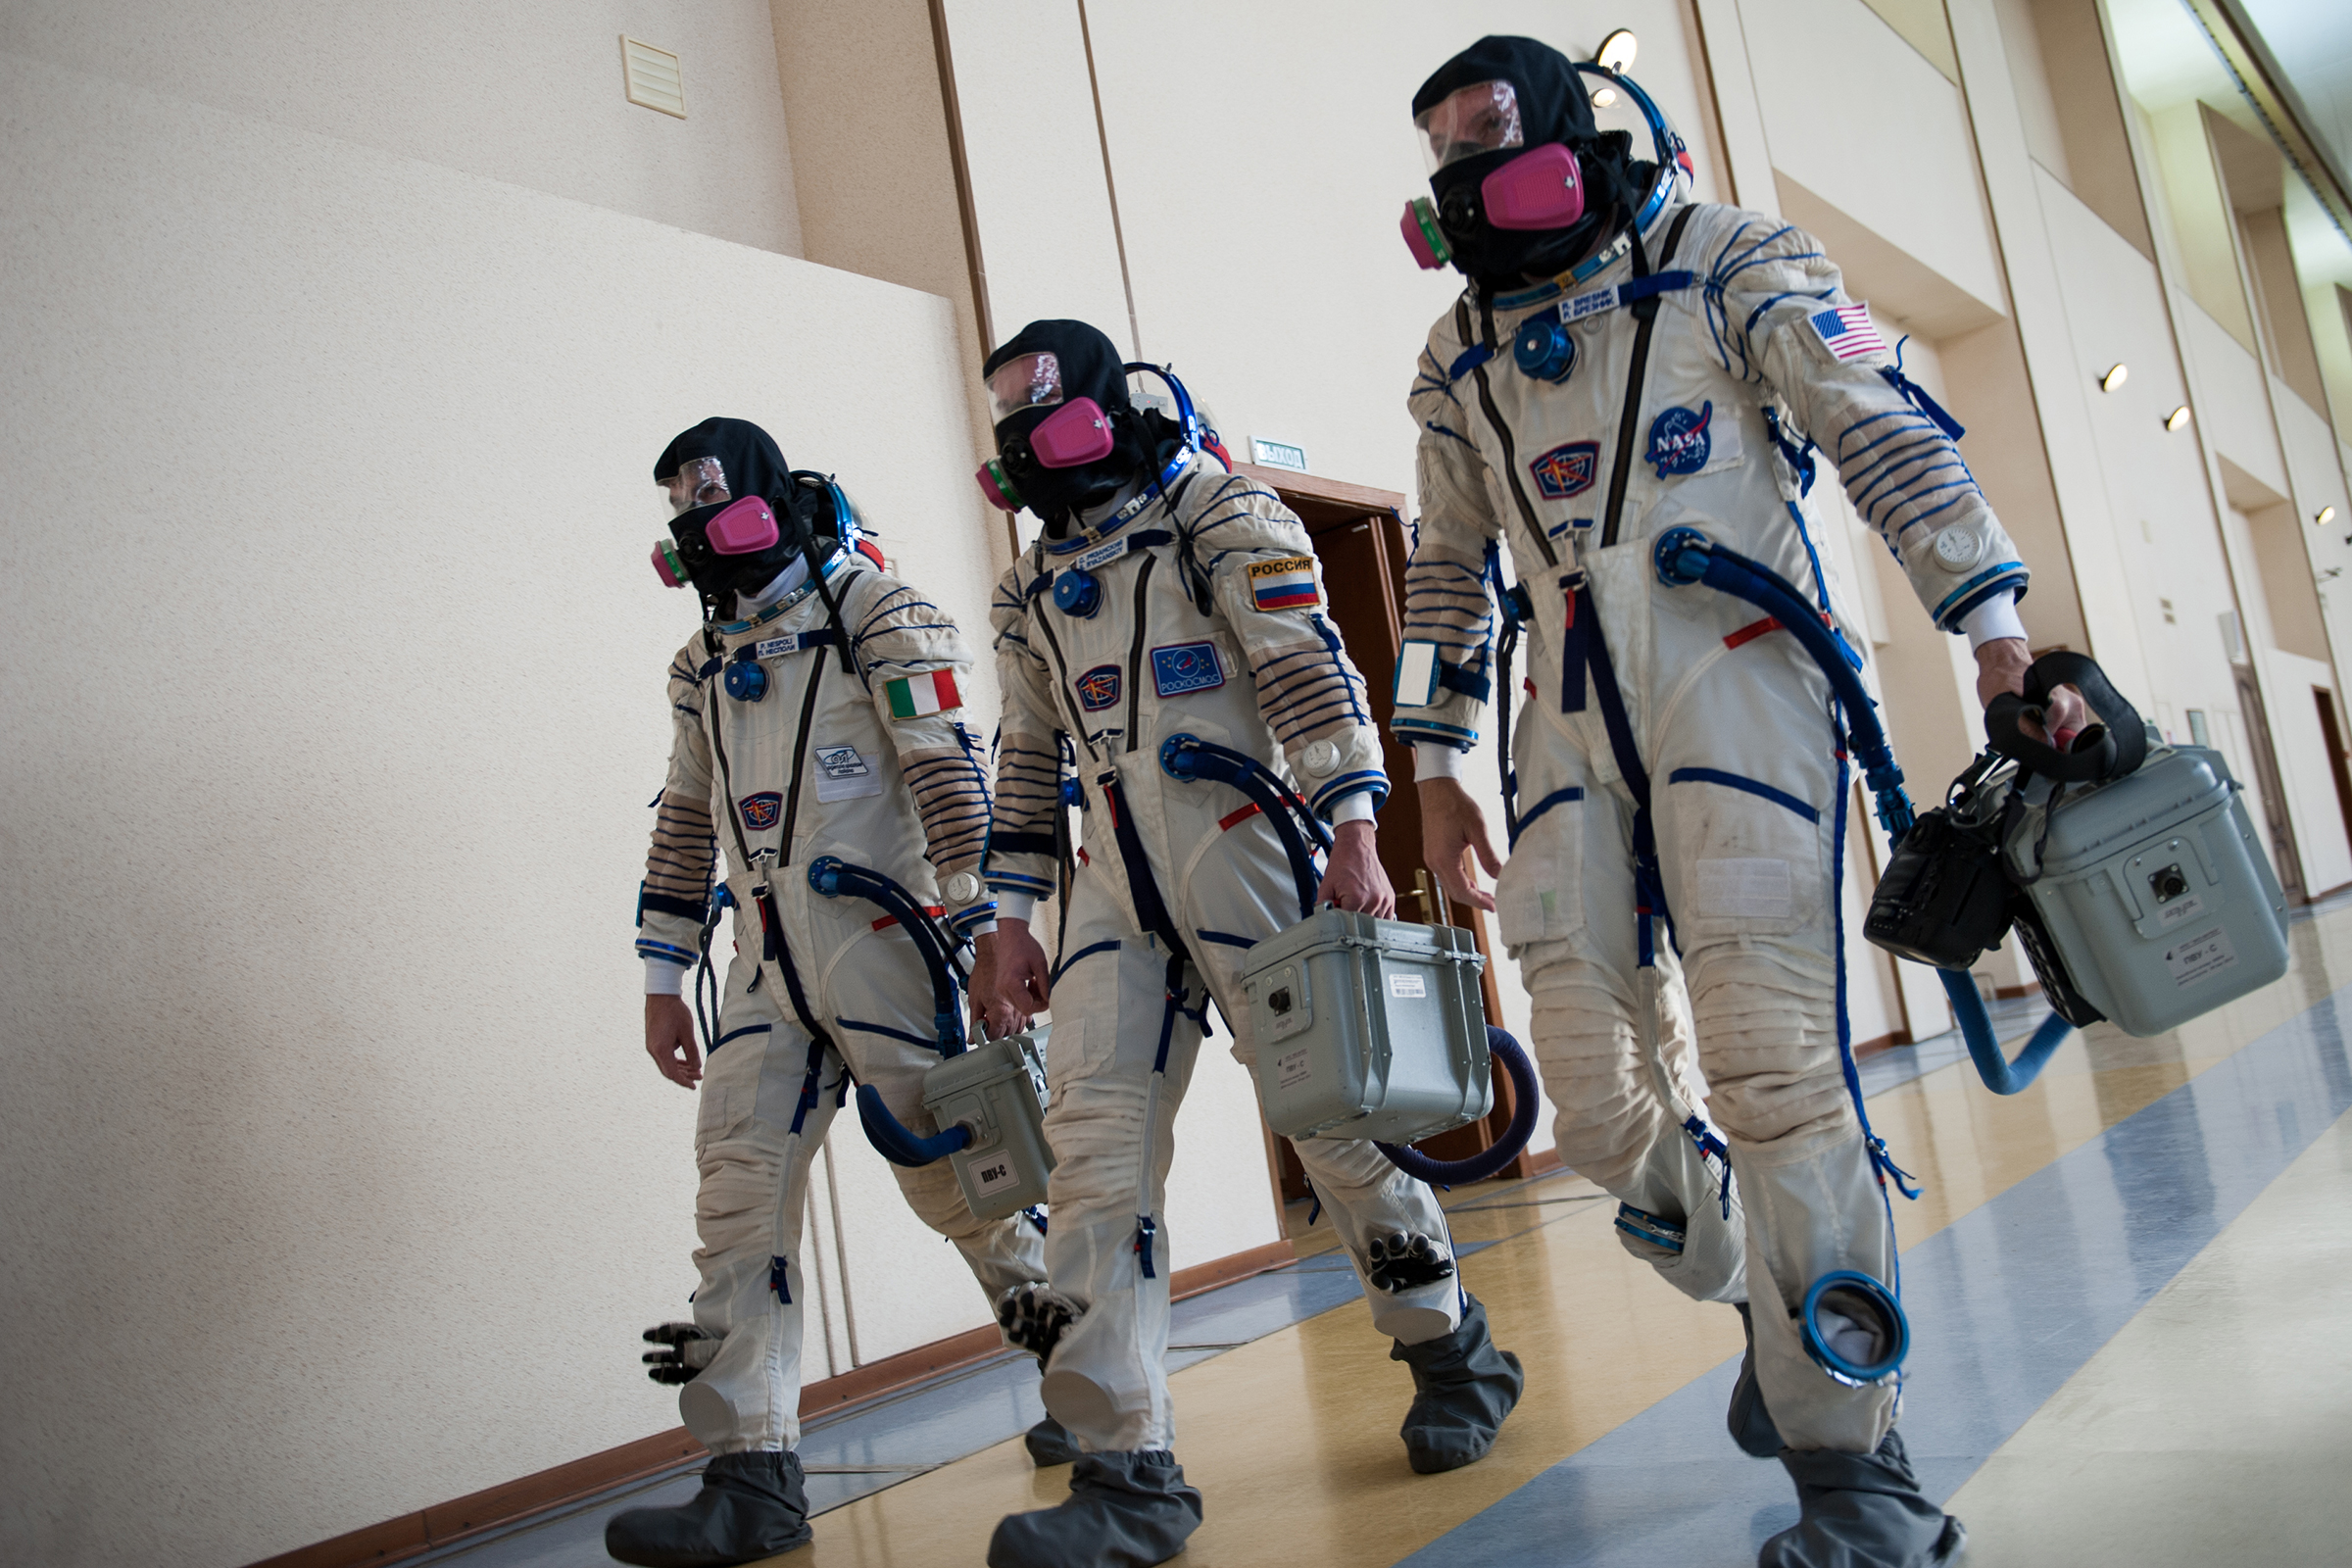 Второй полет Рязанский совершил в 2017 году. За время пребывания на МКС его экипаж, в частности, работал над научно-прикладными исследованиями и экспериментами по программе длительных экспедиций.
